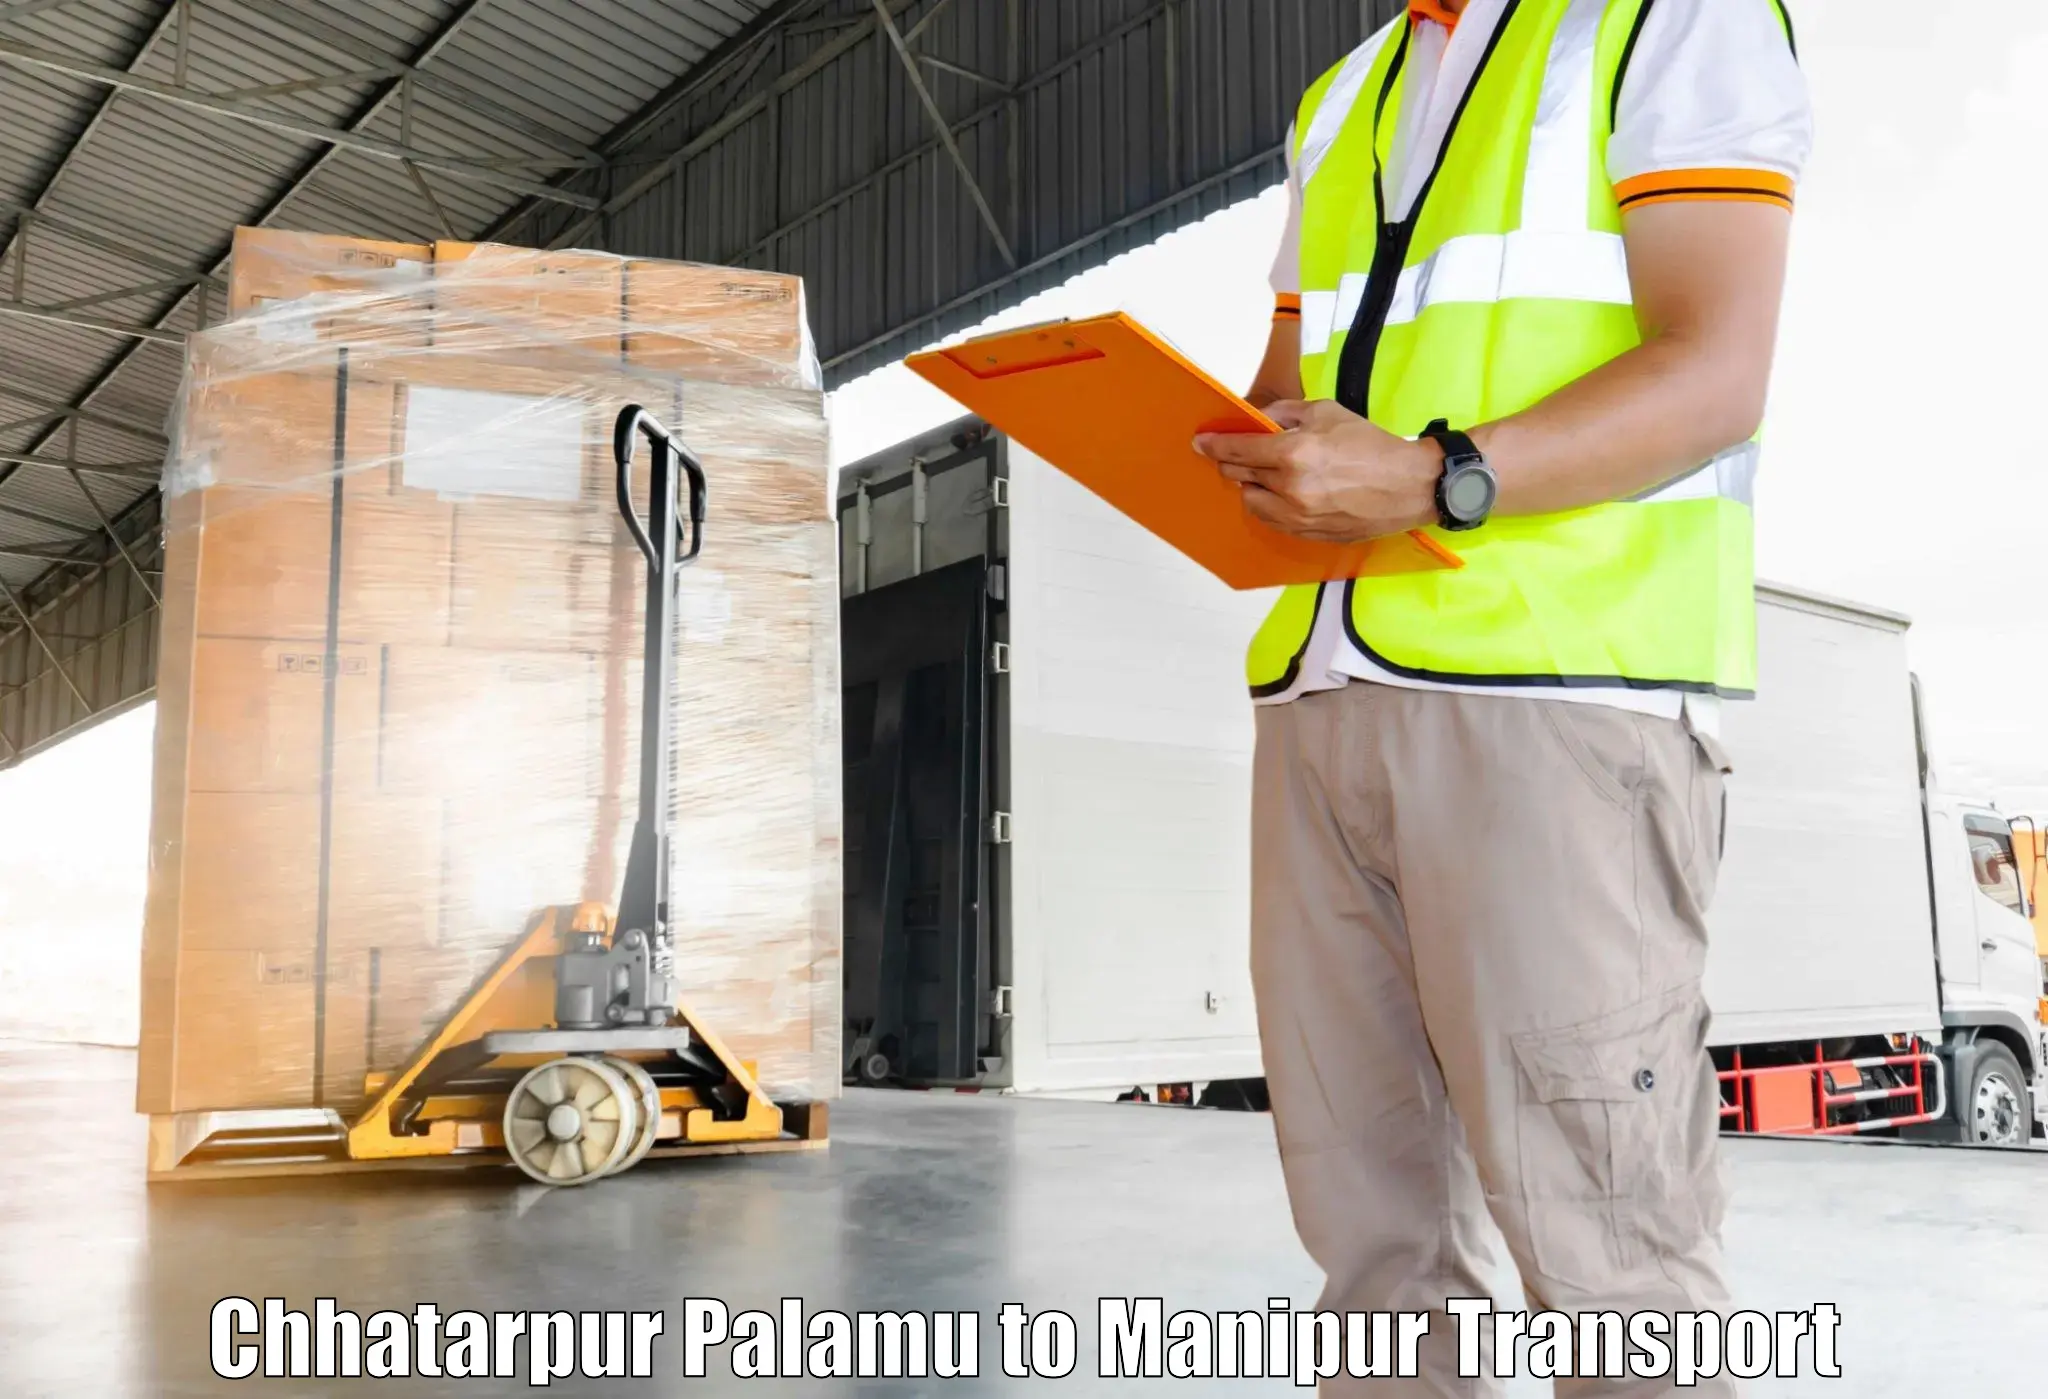 Scooty transport charges Chhatarpur Palamu to Senapati